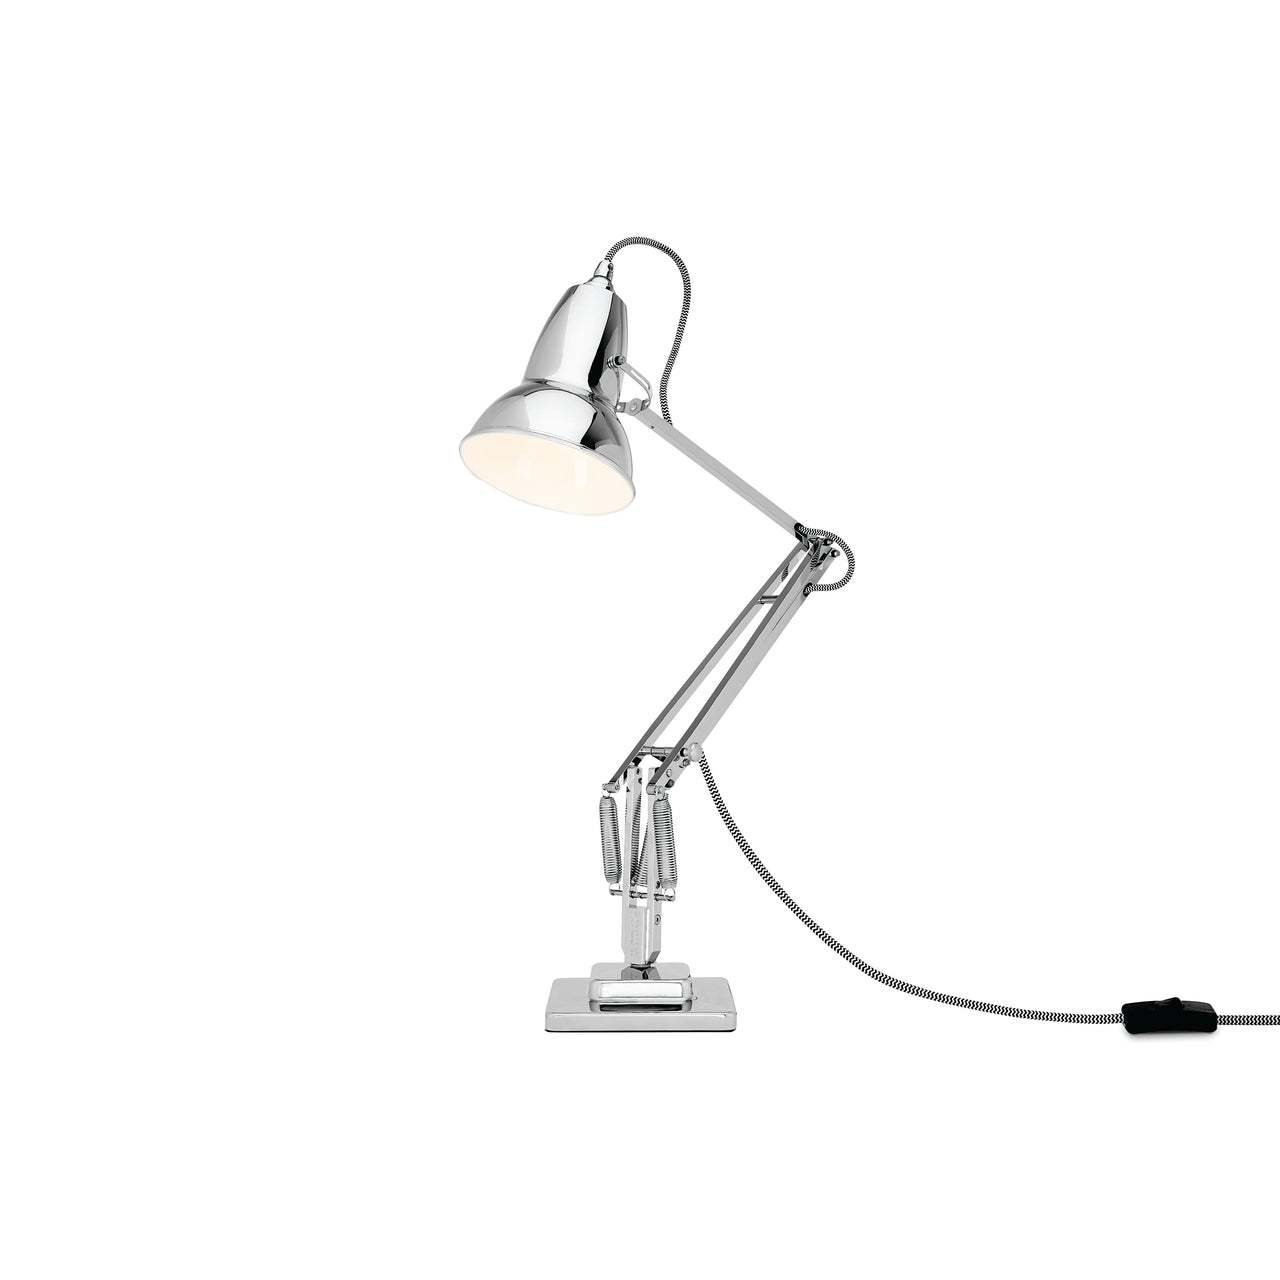 Original 1227 Desk Lamp: Bright Chrome